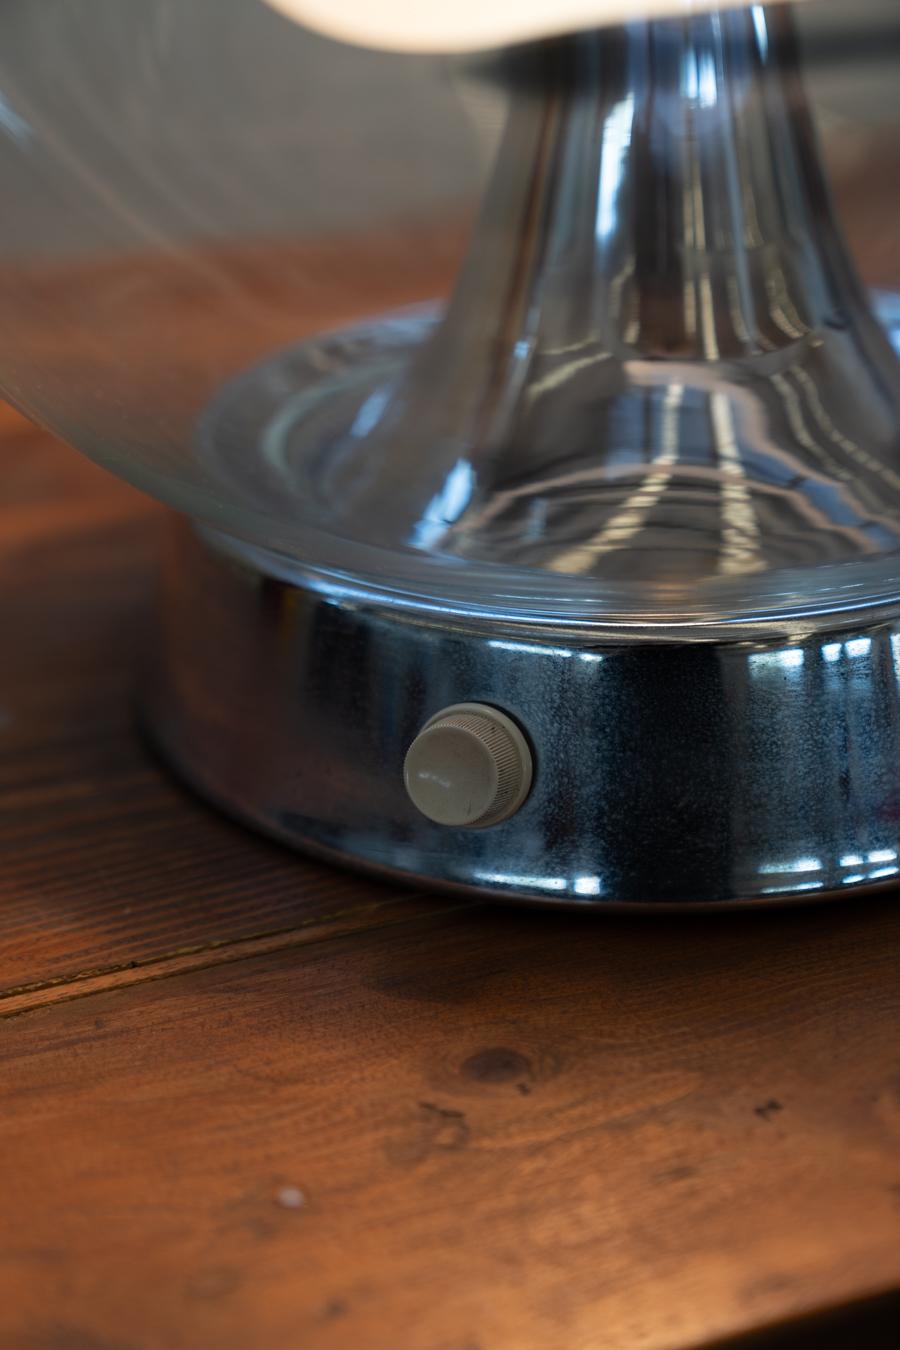 Tischlampe von Gino Vistosi
Beeindruckende Kugellampe von Vistosi, Italien 1970. Muranoglas, mundgeblasen von den Meistern von Vistosi. Die Lampen von Vistosi werden von einem Team renommierter internationaler Designer entworfen. Ihre Produkte